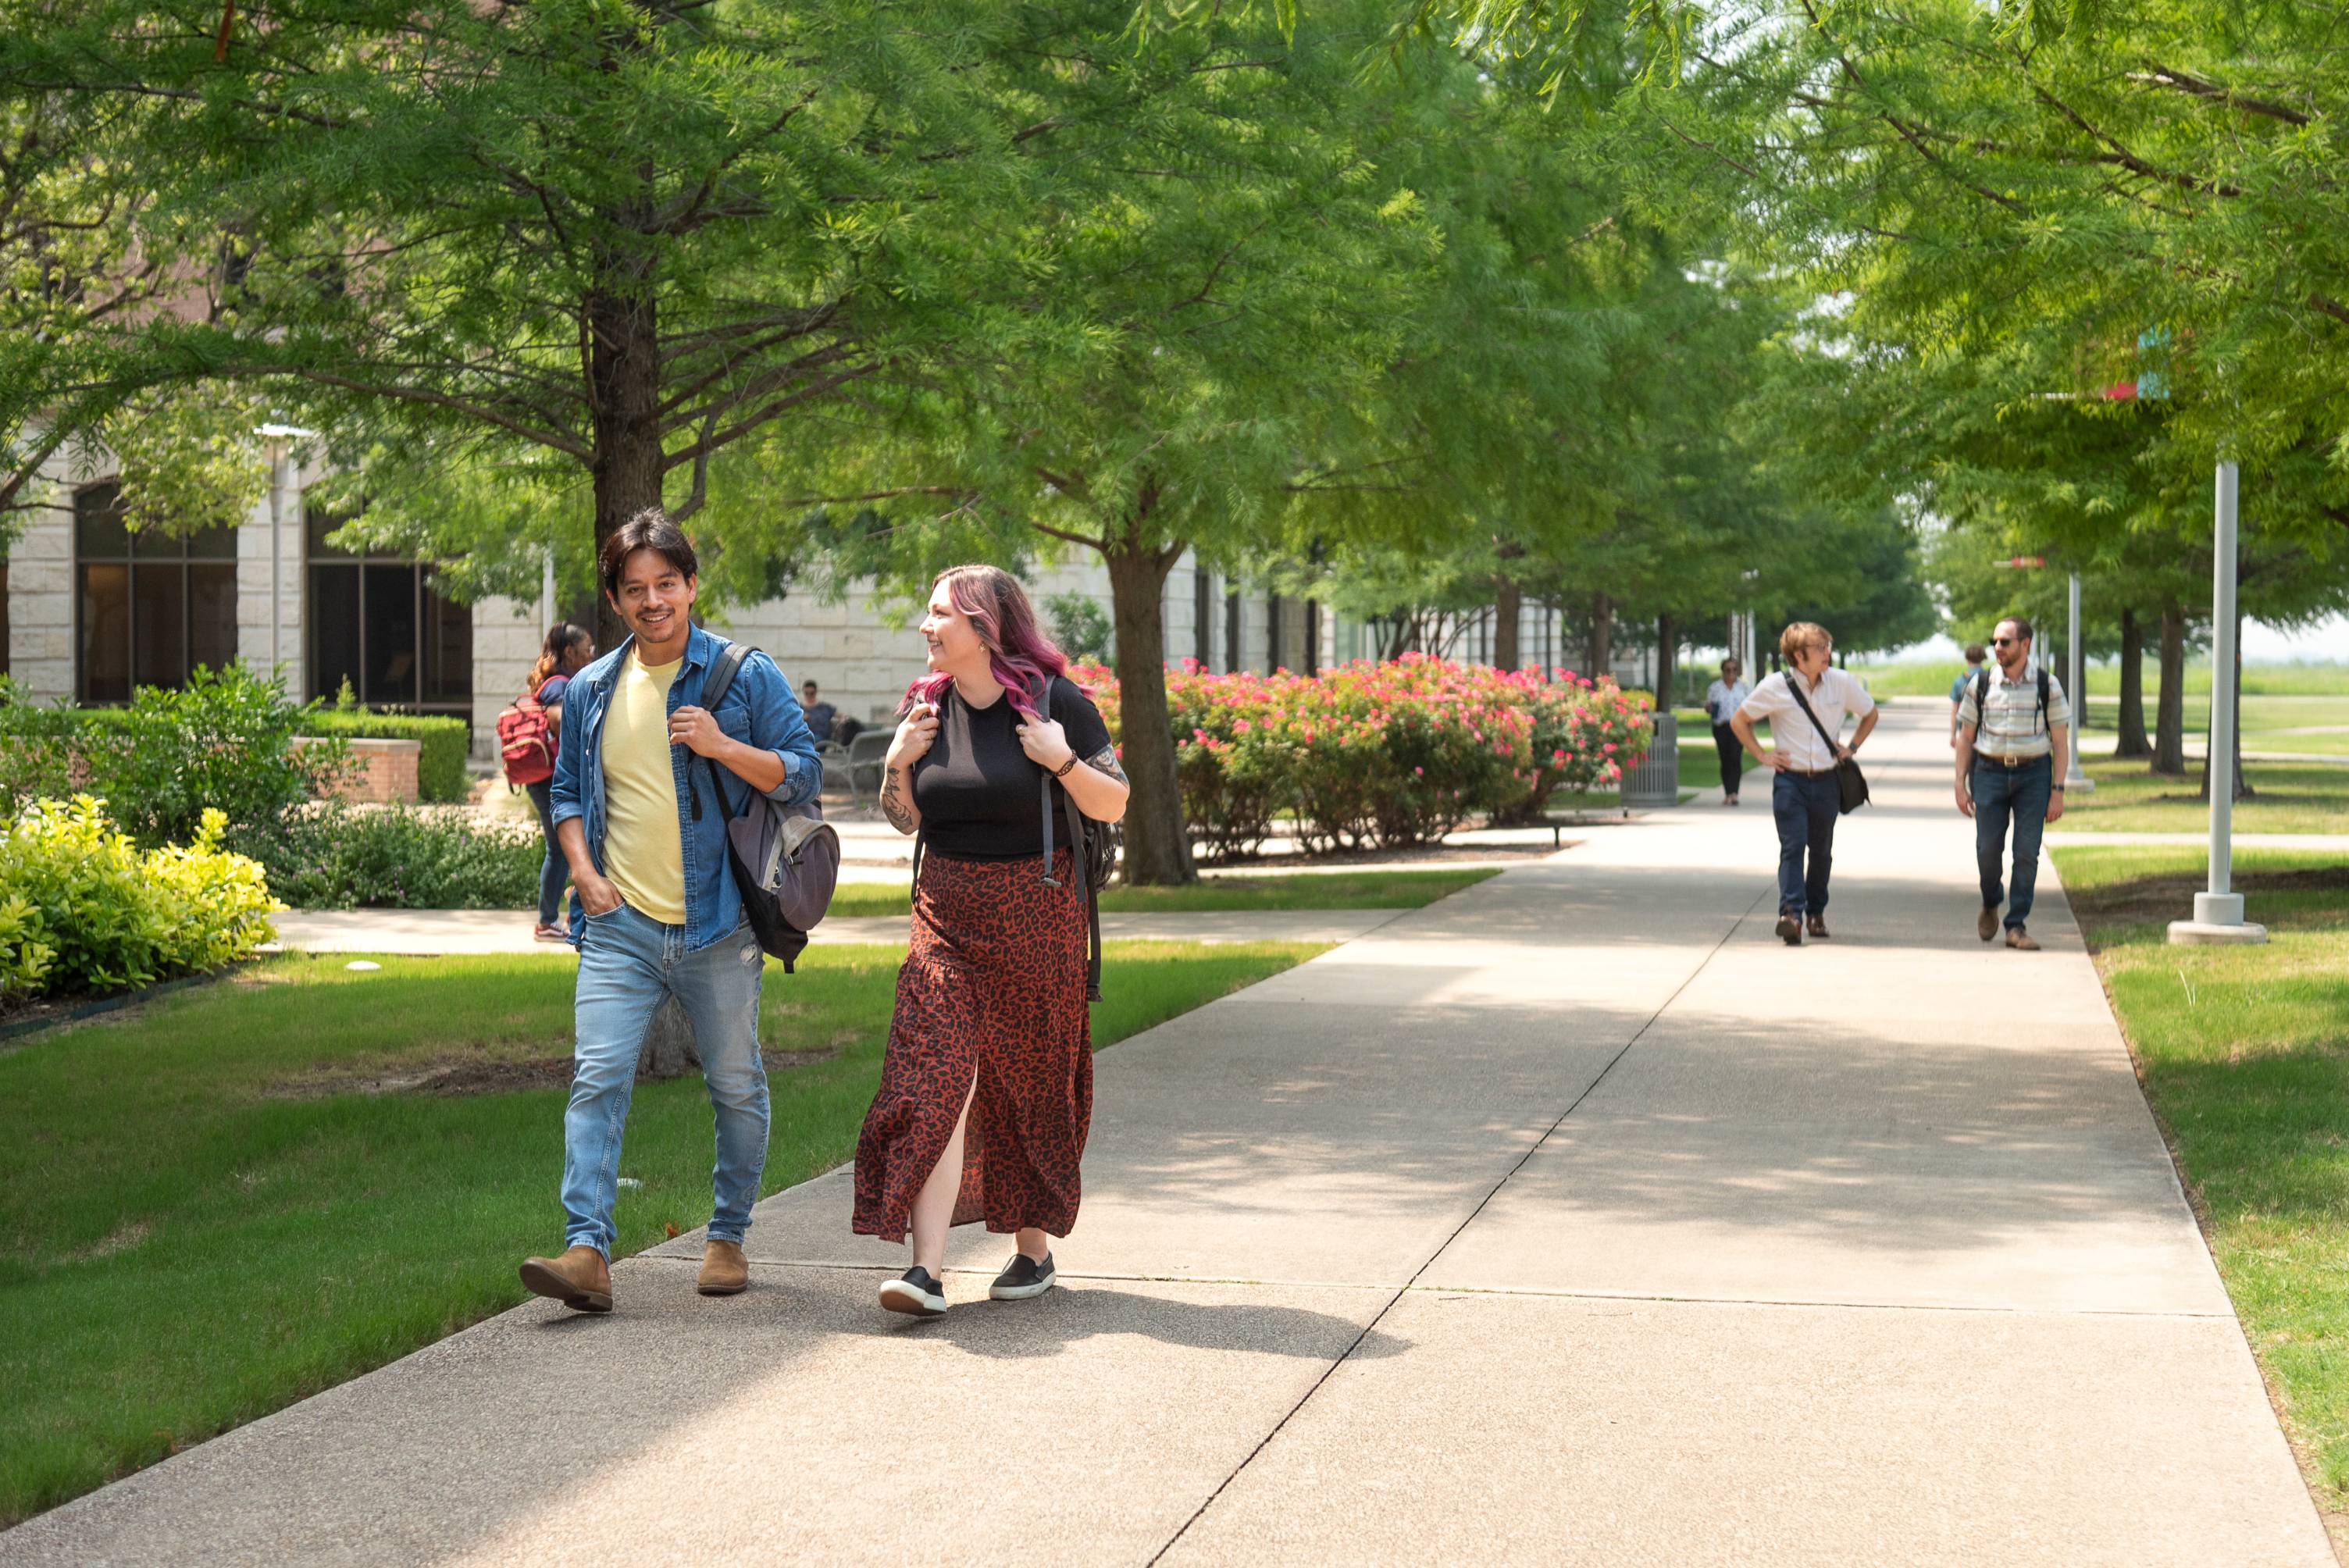 students walking outside on the sidewalk